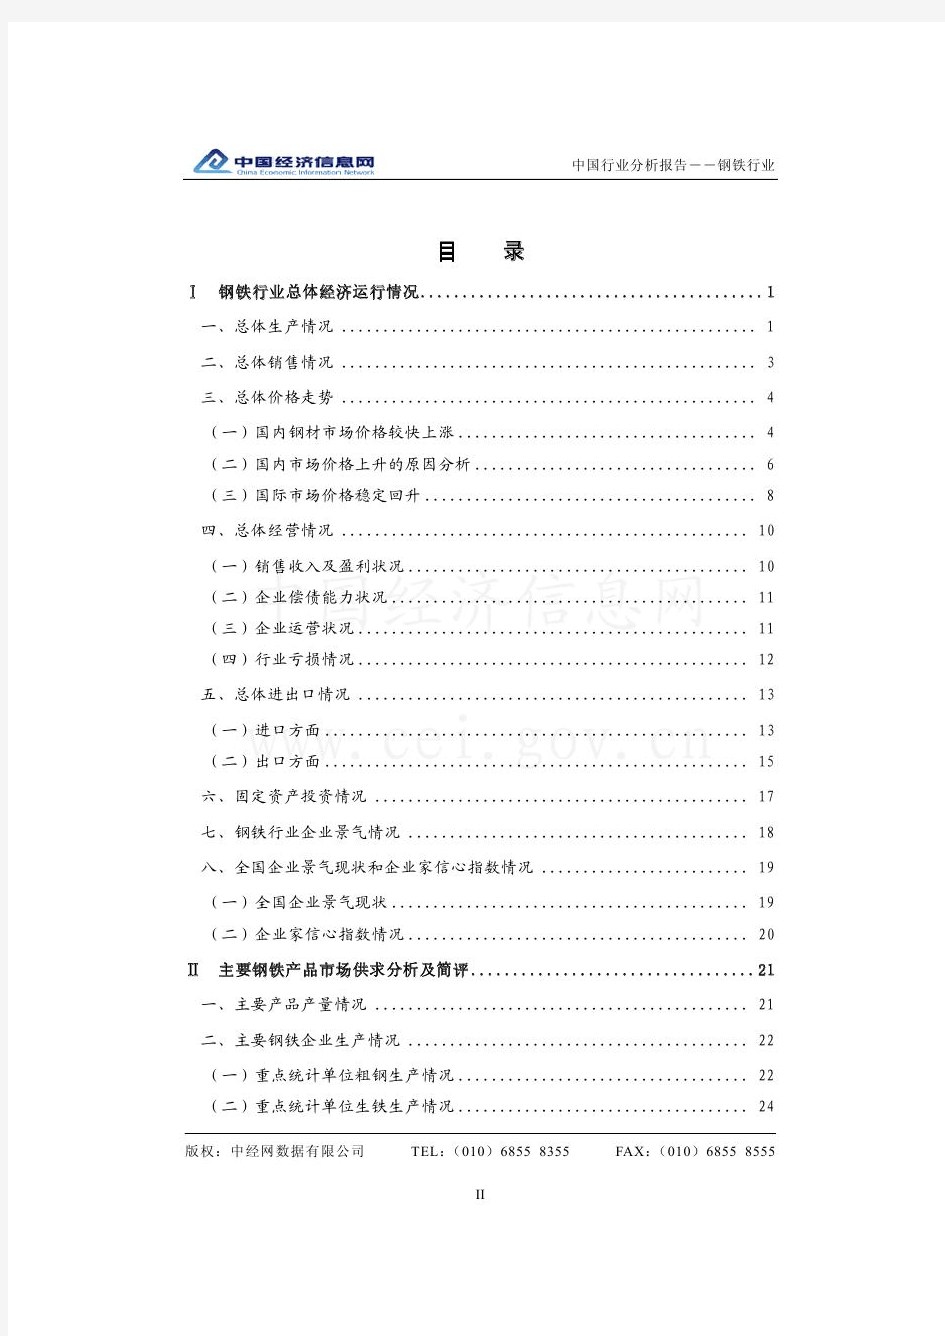 【免费】中国钢铁行业分析报告(2010年1季度)